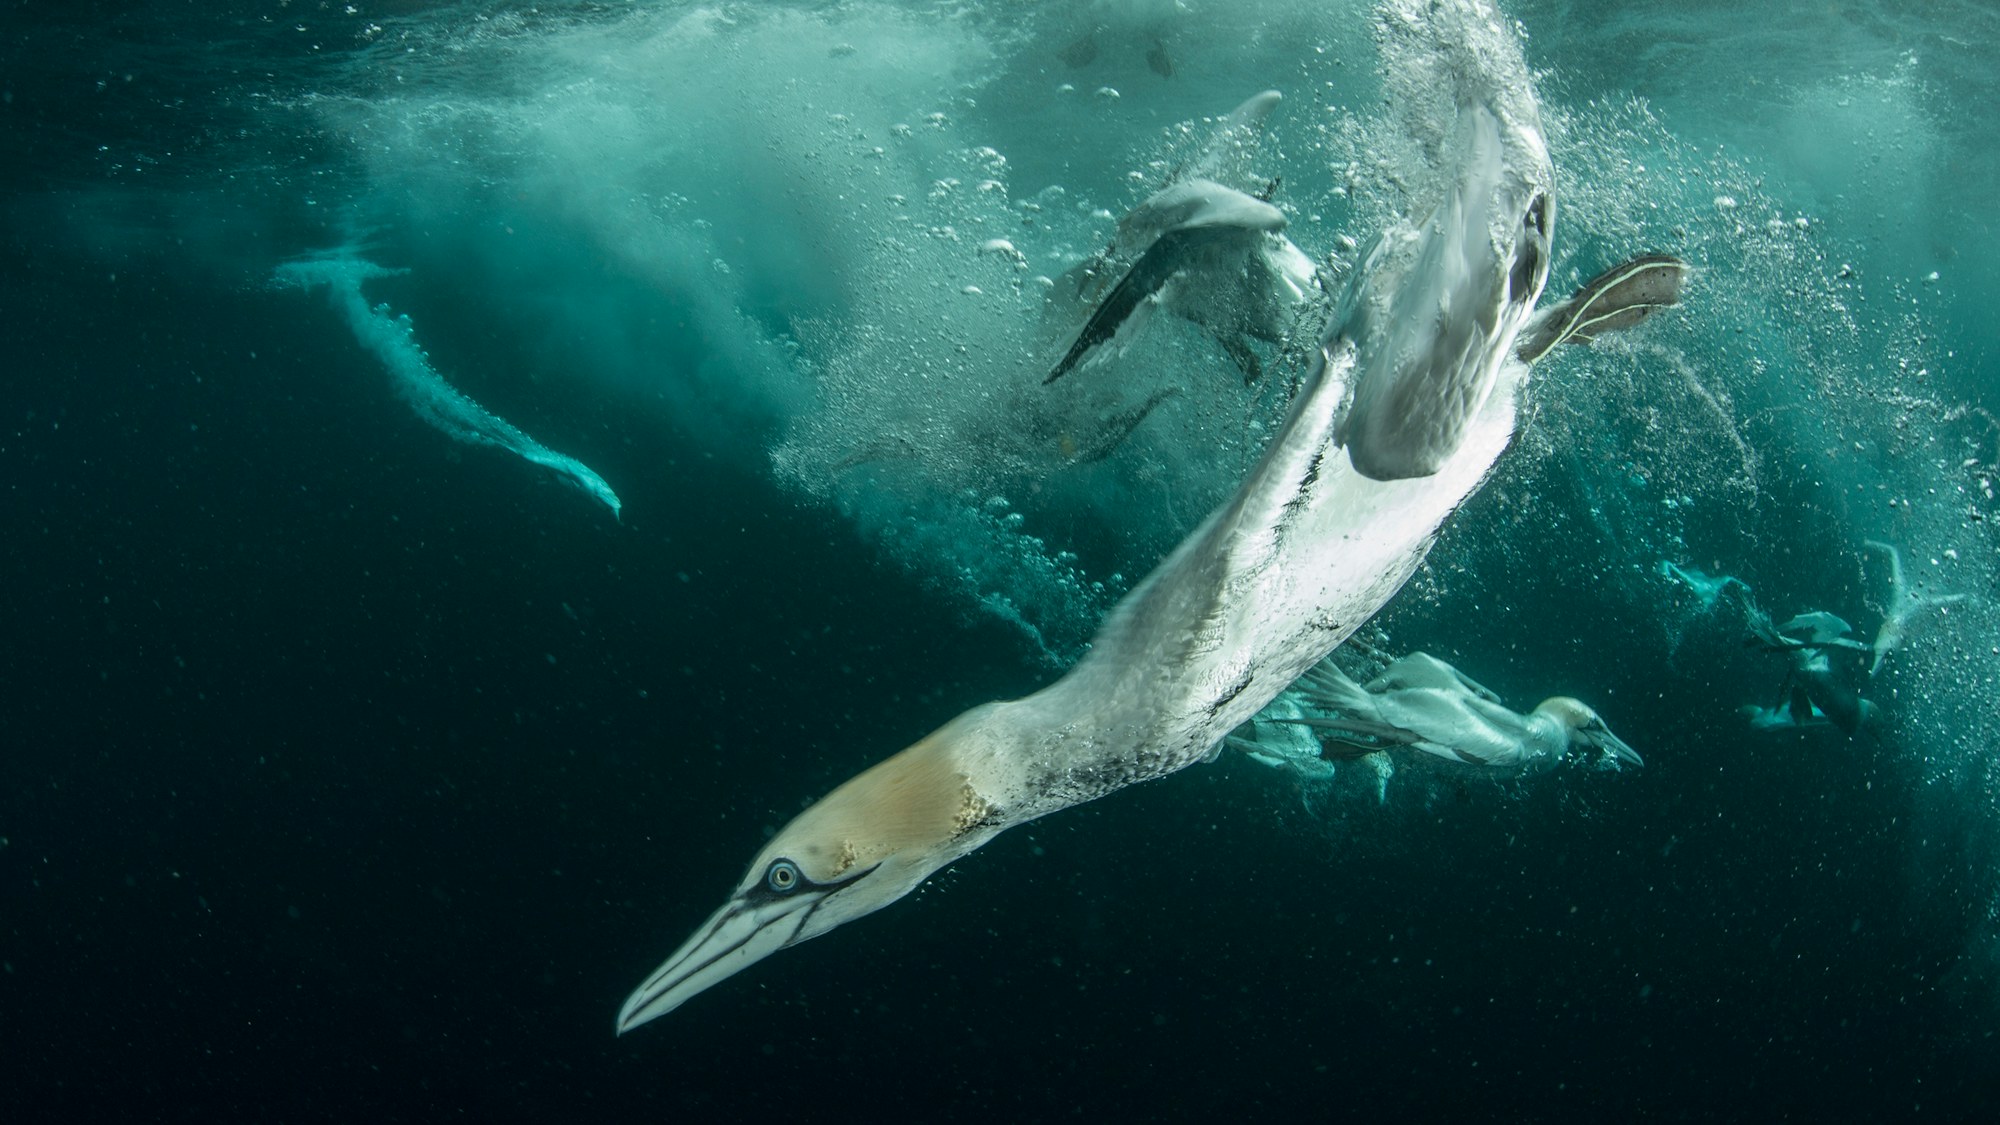 Rewild the seas gannet